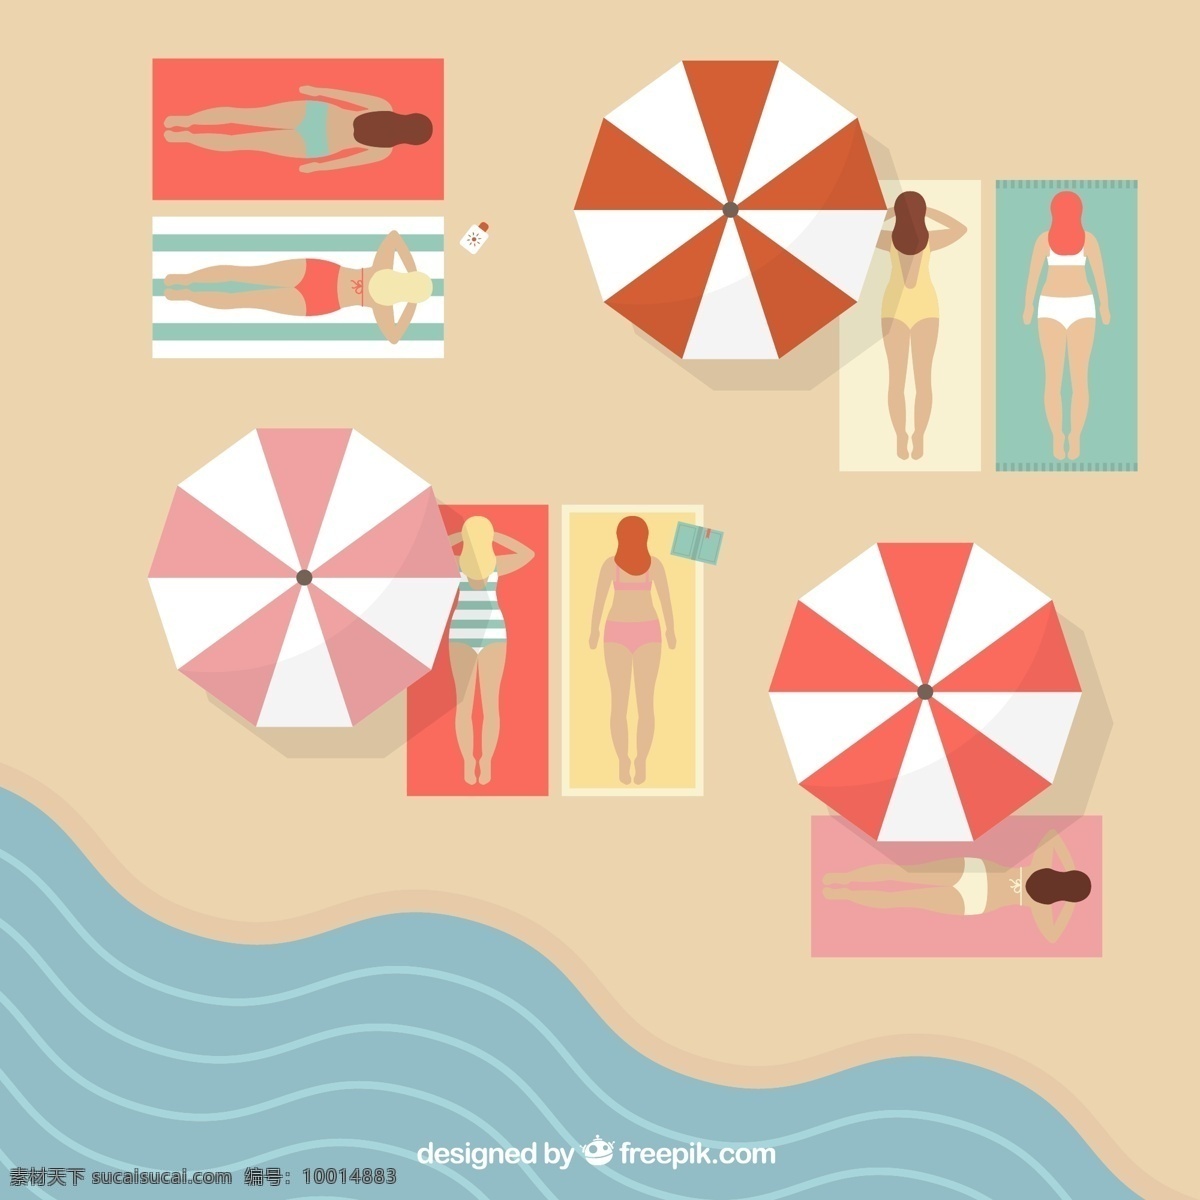 沙滩 日光 浴场 俯视图 女子 大海 夏季 遮阳伞 日光浴 沙滩毯子 矢量图 海水 黄色